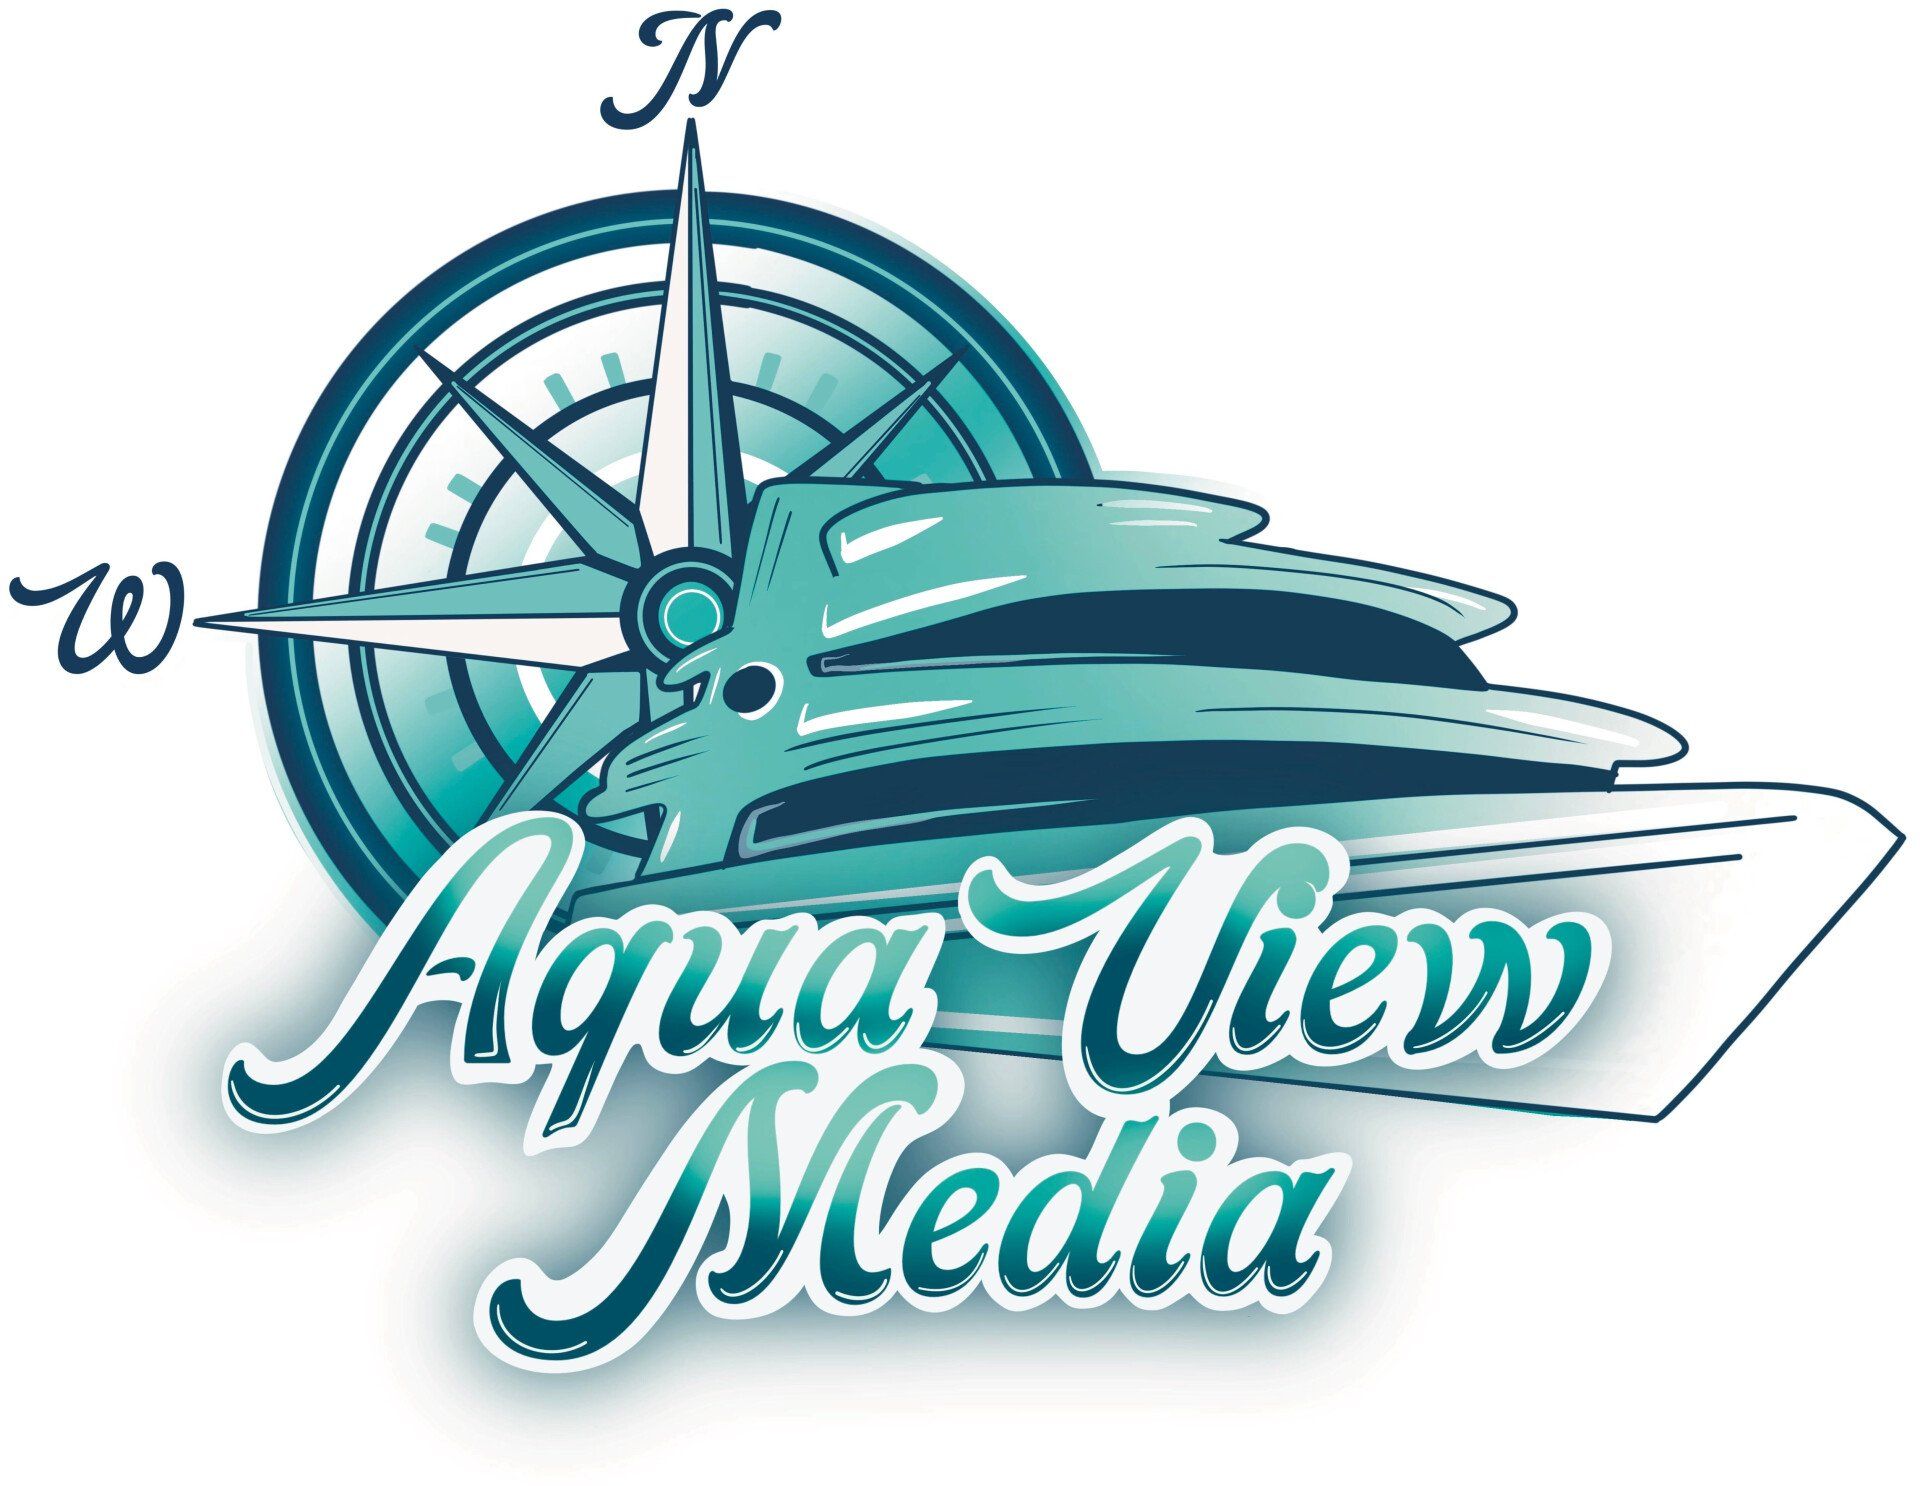 Aqua View Media logo